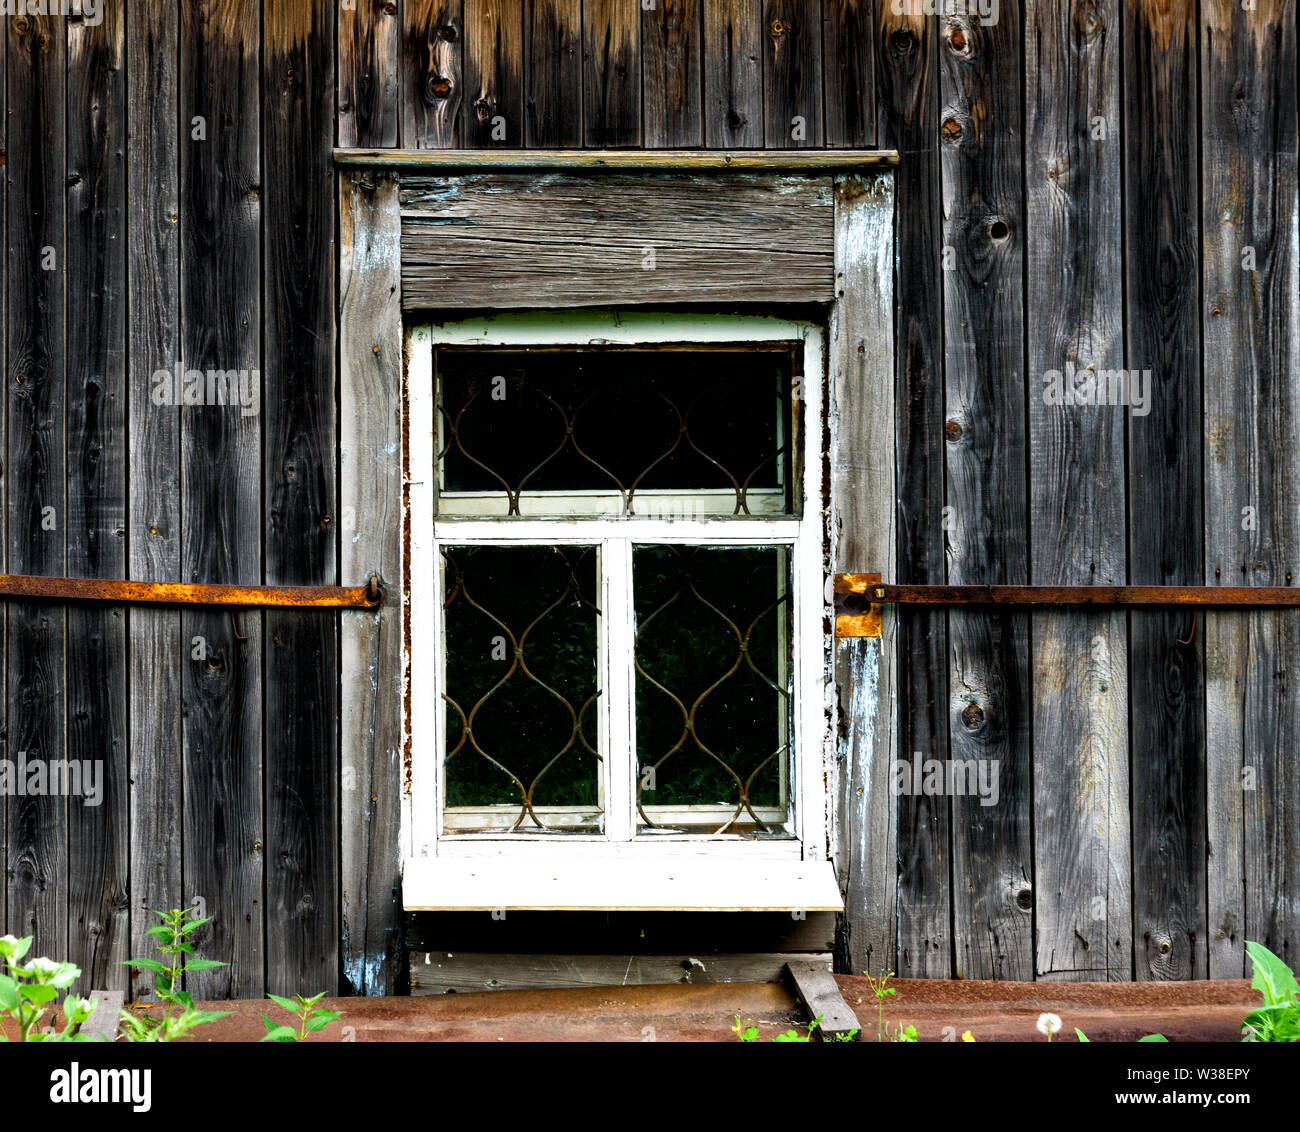 La finestra con il legno architrave scolpito nella vecchia casa in legno nella vecchia città russa. Foto Stock